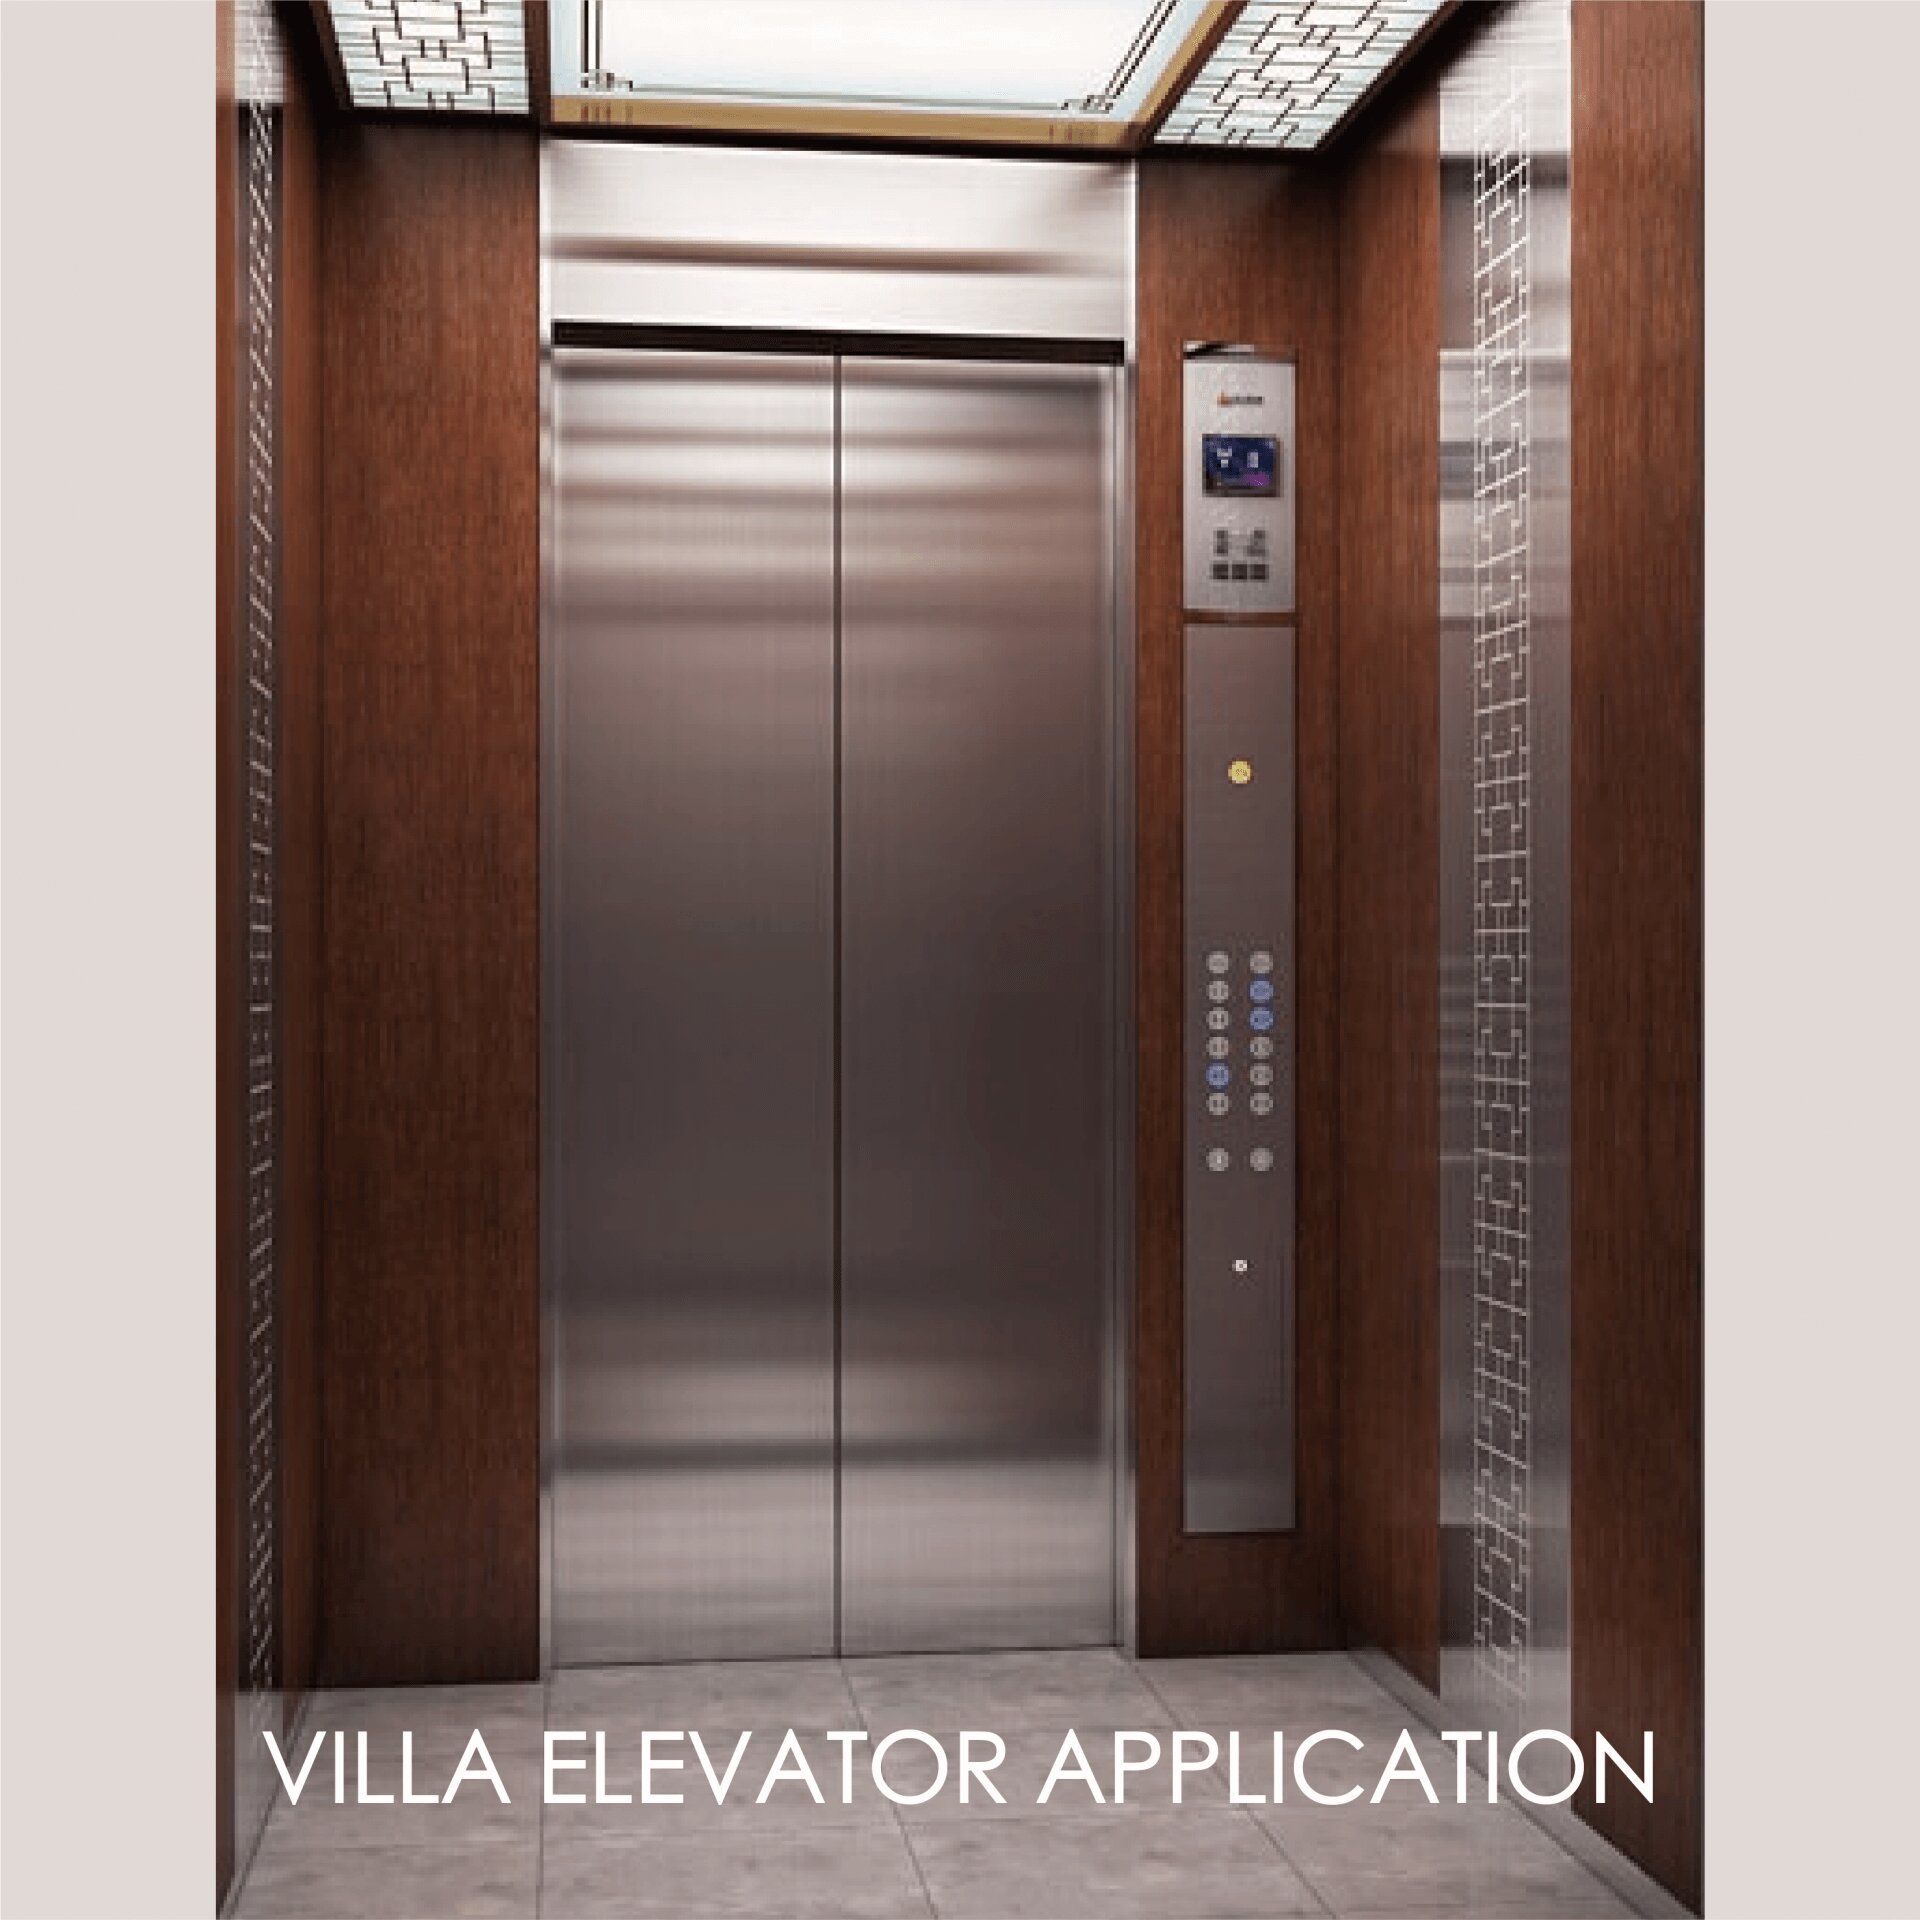 El uso de metal laminado para decorar el panel de la puerta del ascensor y el espacio interior puede crear estética y durabilidad.